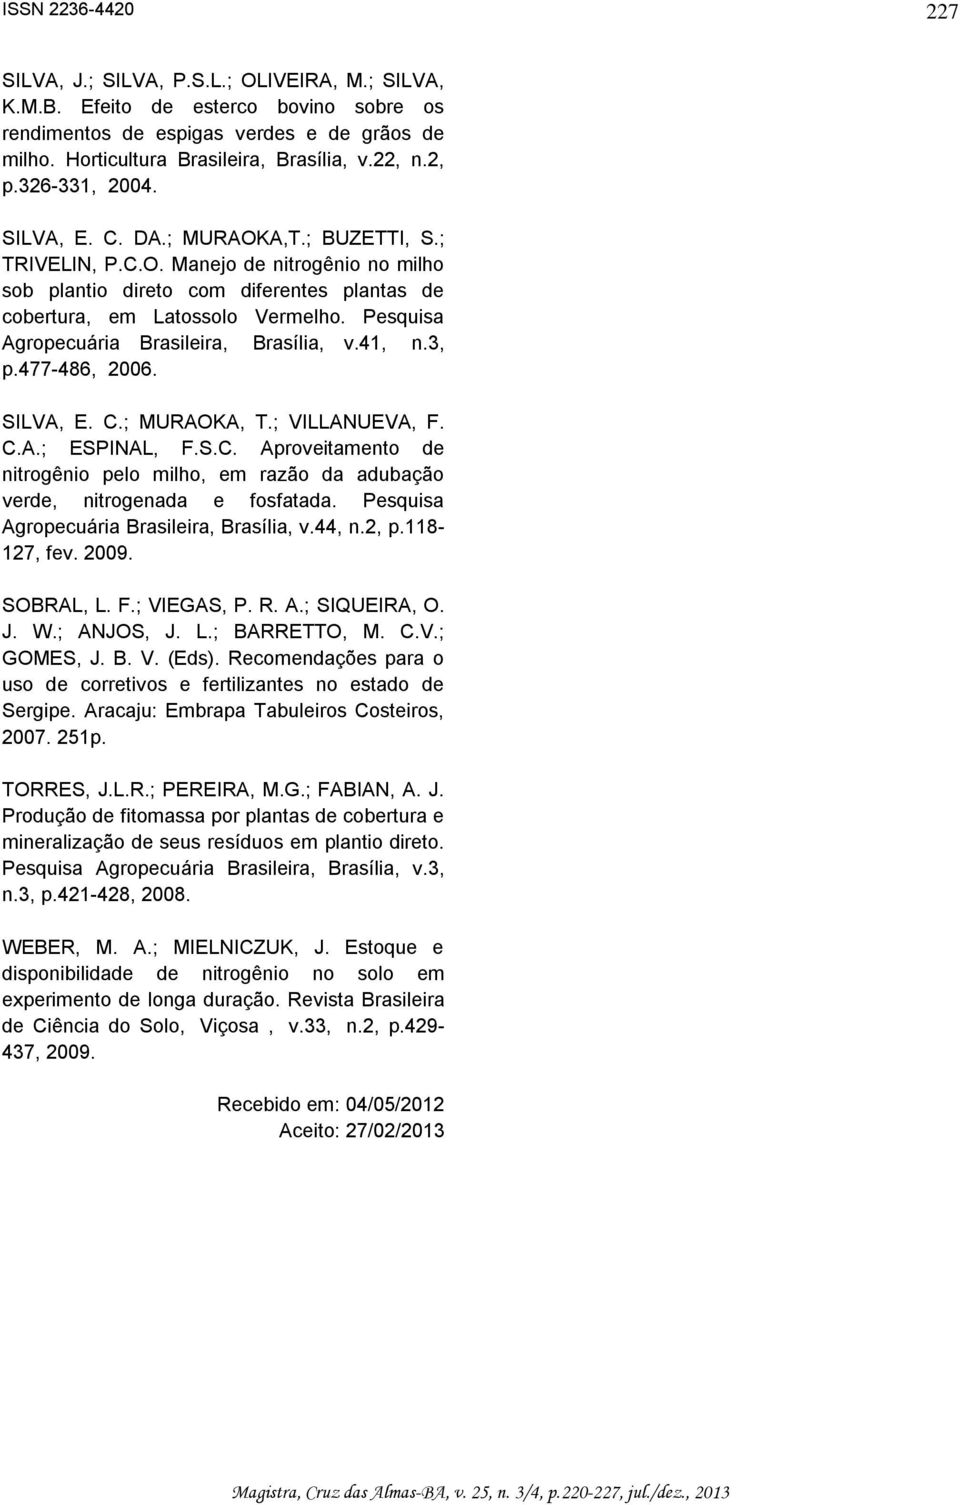 Pesquisa Agropecuária Brasileira, Brasília, v.41, n.3, p.477-486, 2006. SILVA, E. C.; MURAOKA, T.; VILLANUEVA, F. C.A.; ESPINAL, F.S.C. Aproveitamento de nitrogênio pelo milho, em razão da adubação verde, nitrogenada e fosfatada.